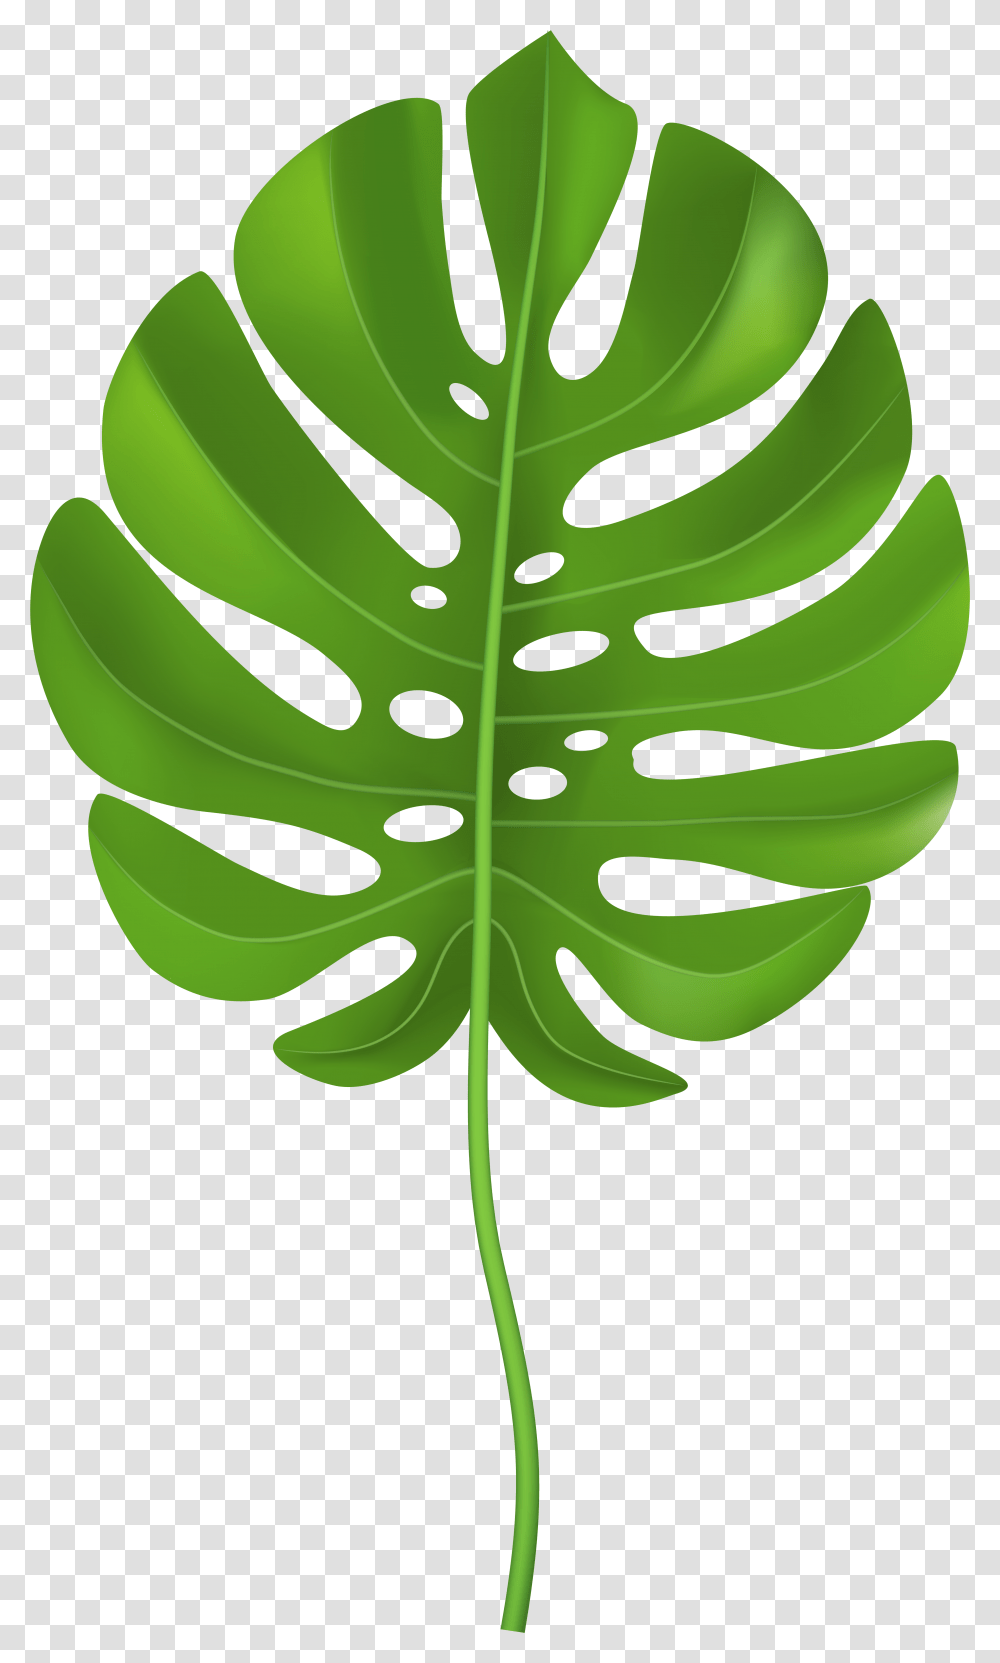 Tropical Palm Leaf Clip Art Image Clip Art Palm Leaf, Green, Plant, Vegetation, Fern Transparent Png